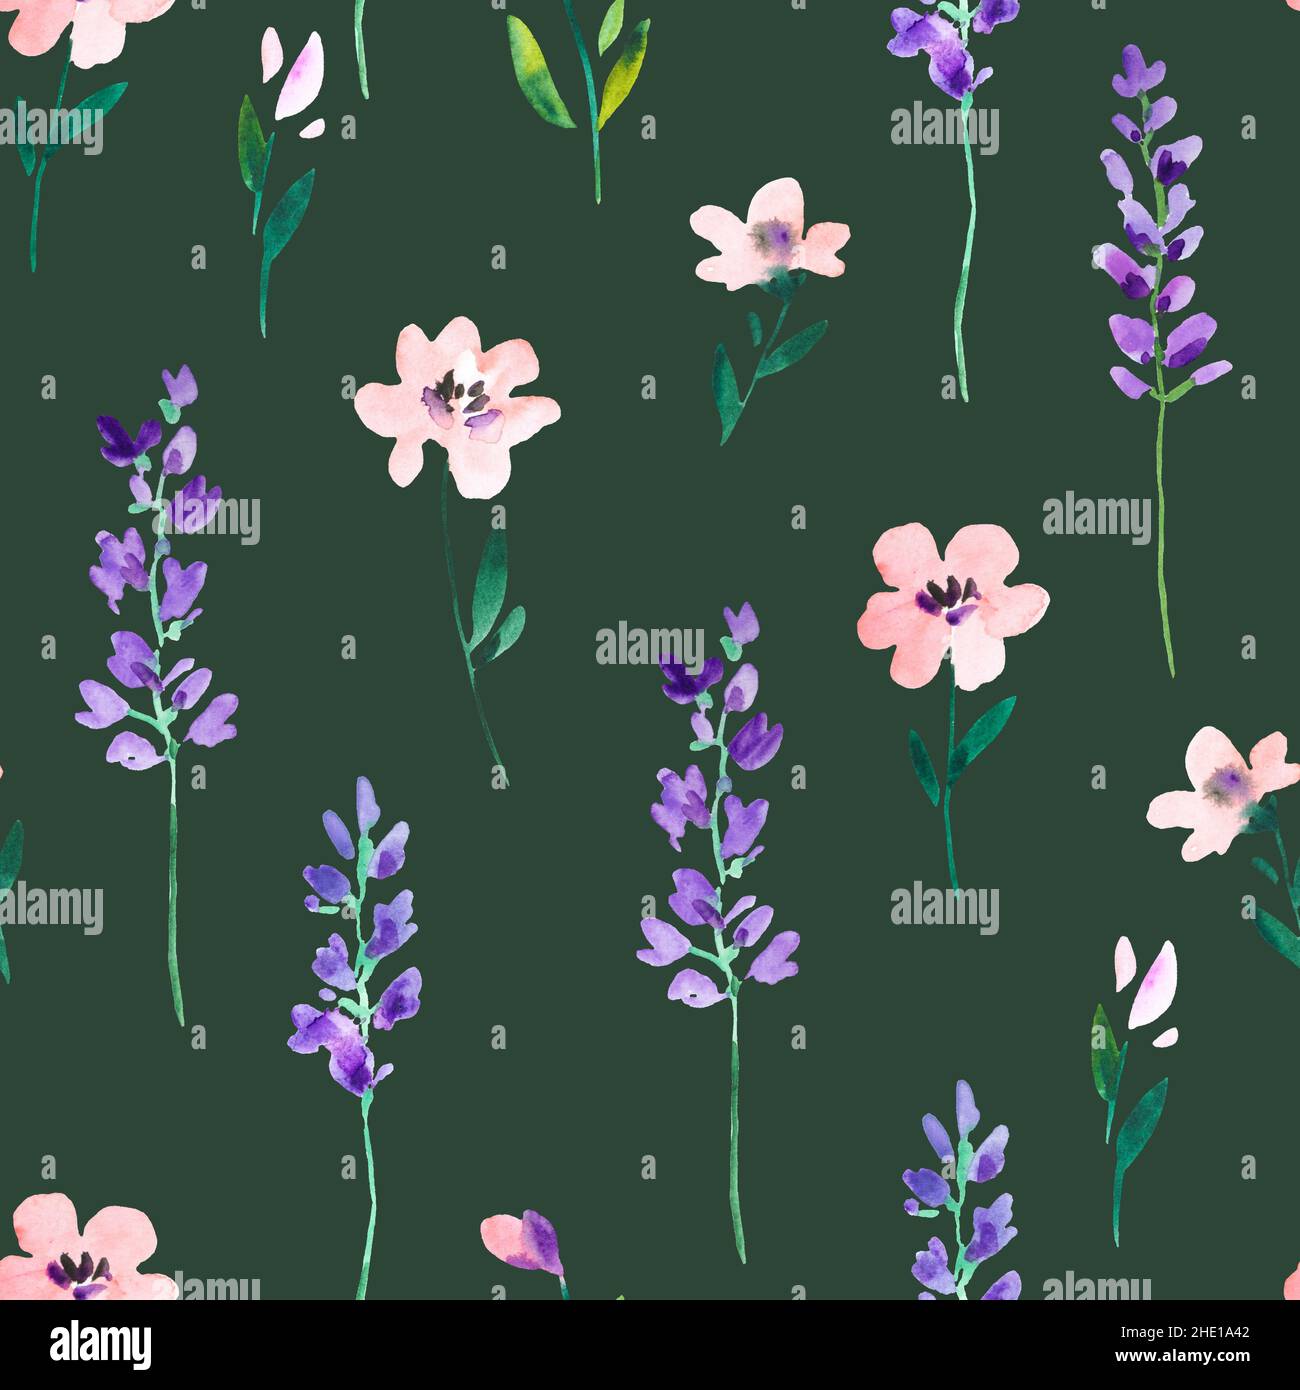 Aquarell-Nahtloses Muster mit wilden Wiesenblumen und Lavendelzweigen. Original handgezeichneter Naturdruck für Dekor und Textildesign. Stockfoto